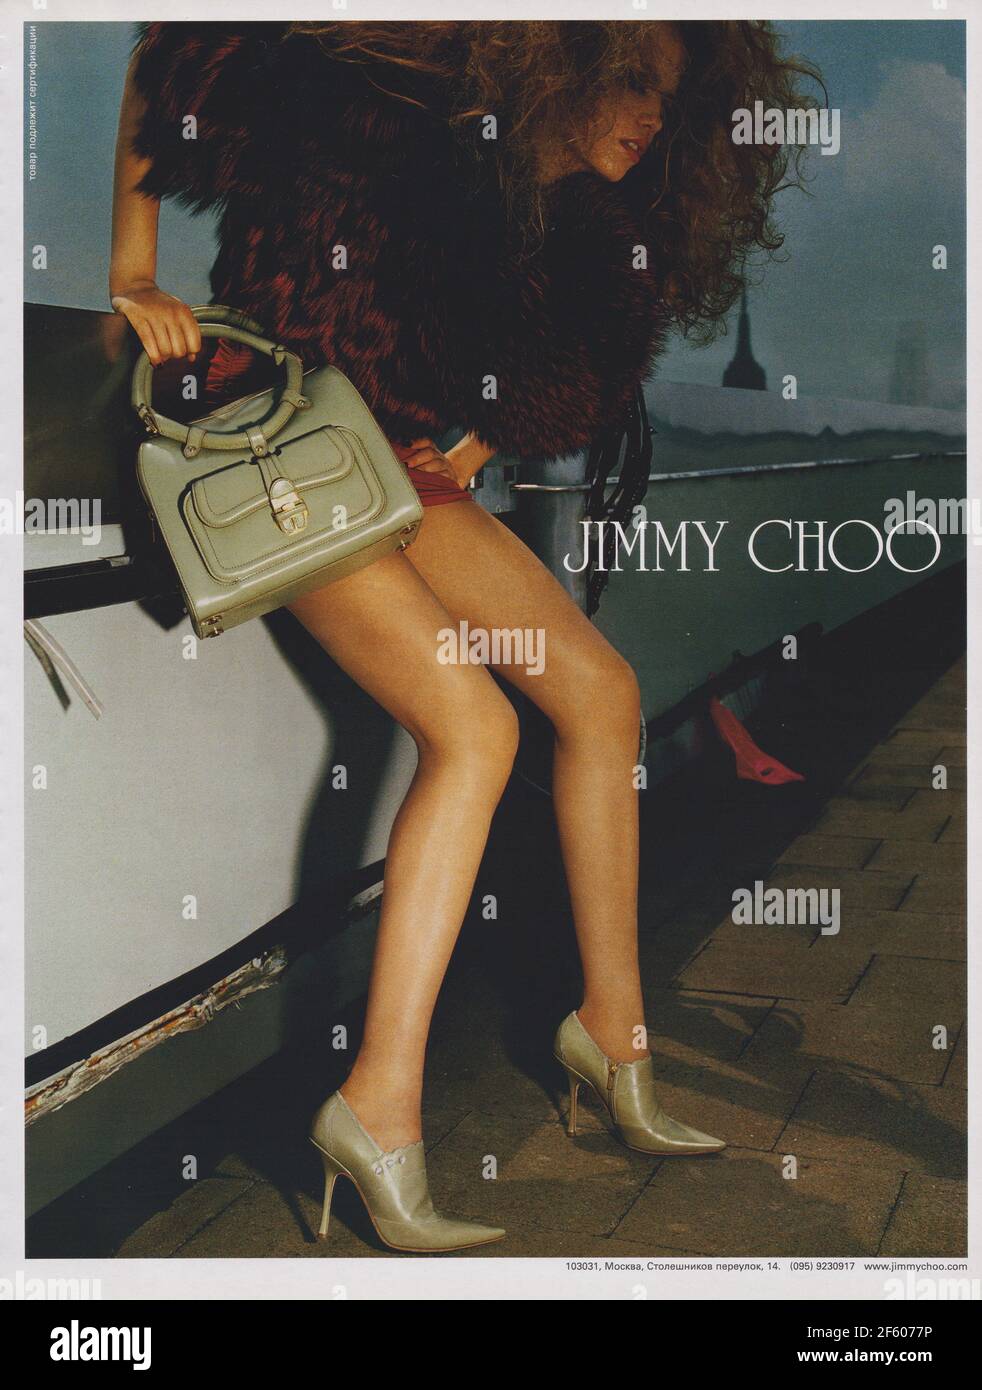 Cartel publicitario Jimmy Choo calzado de moda casa en revista de 2004 años, anuncio creativo Jimmy Choo 2000s anuncio Foto de stock